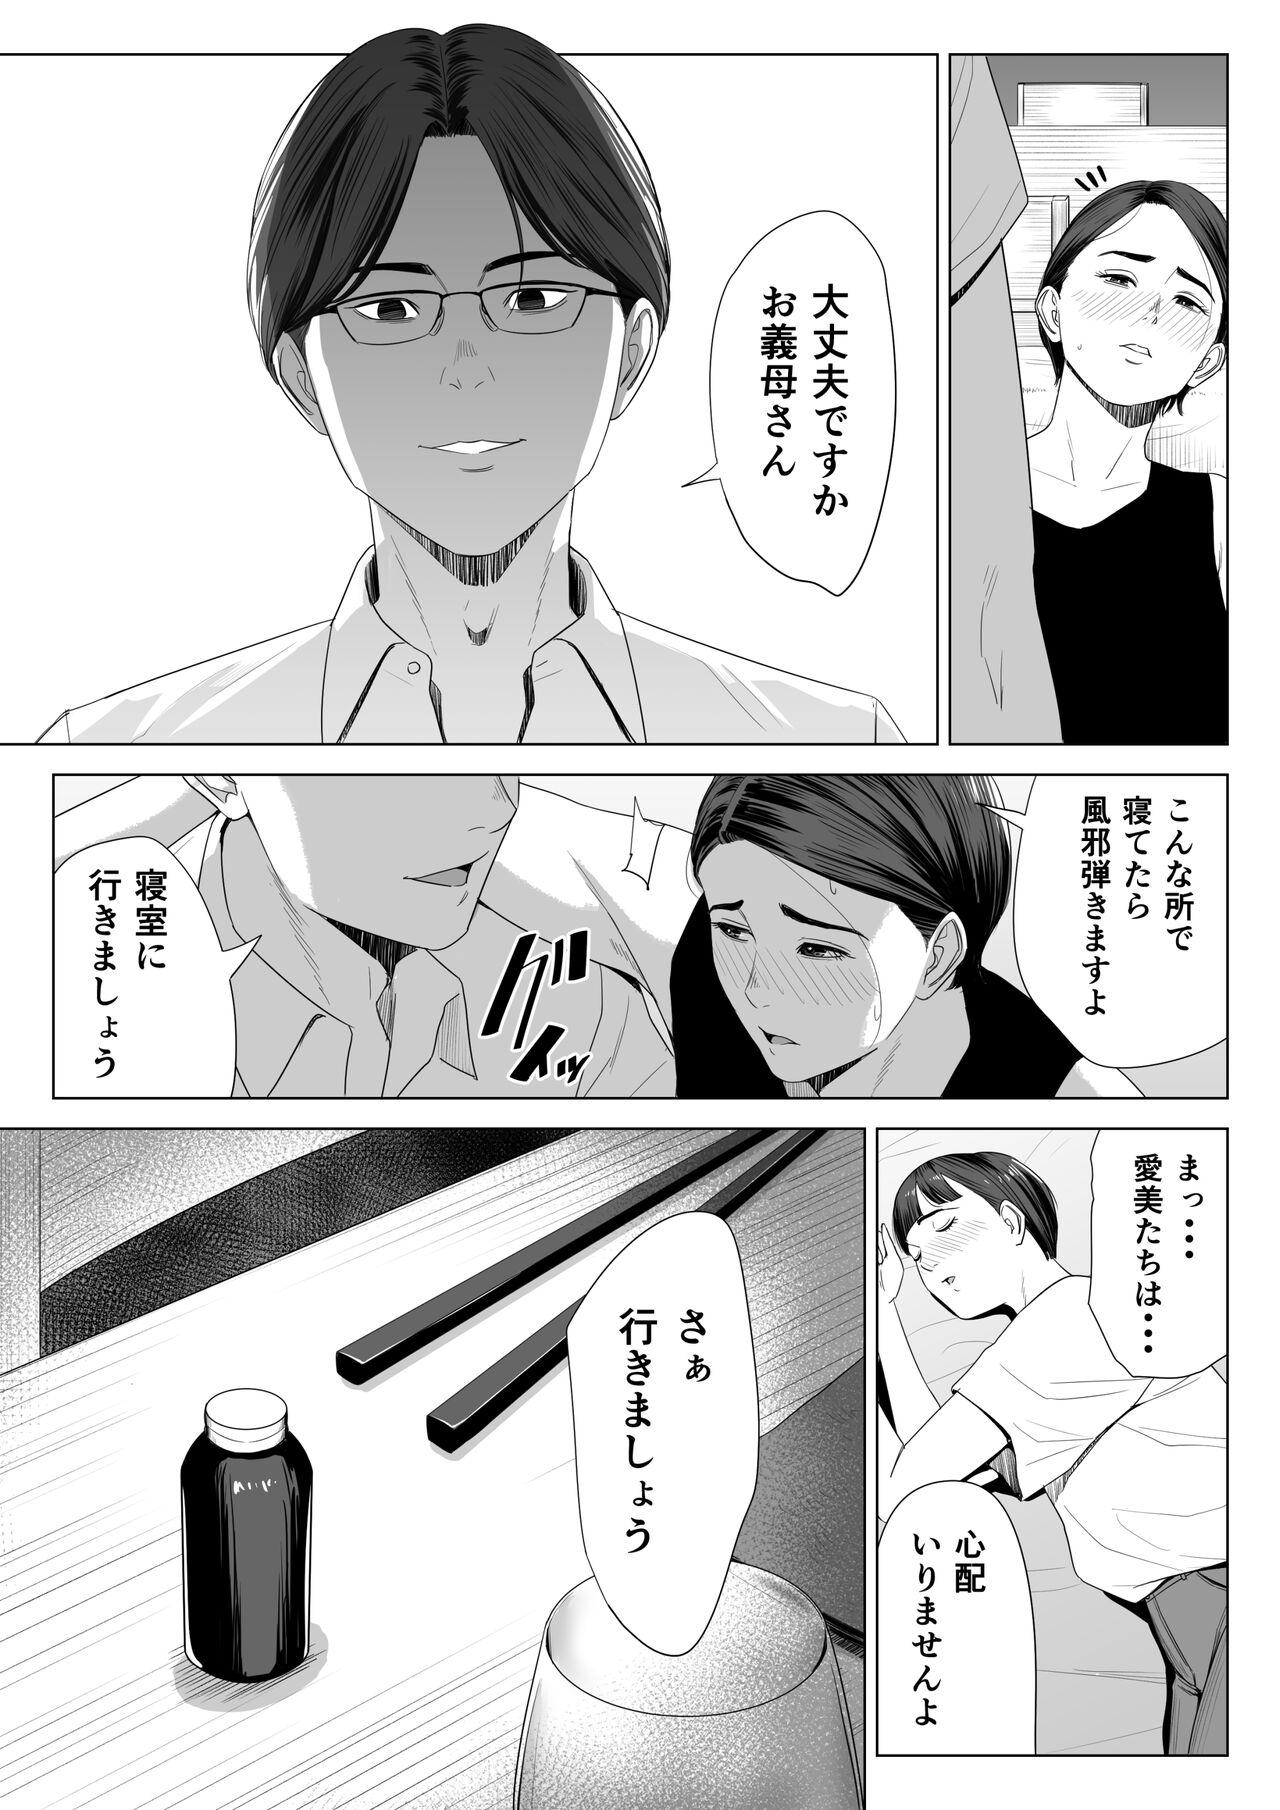 Oral Porn Gibo no tsukaeru karada. - Original Anal Porn - Page 10